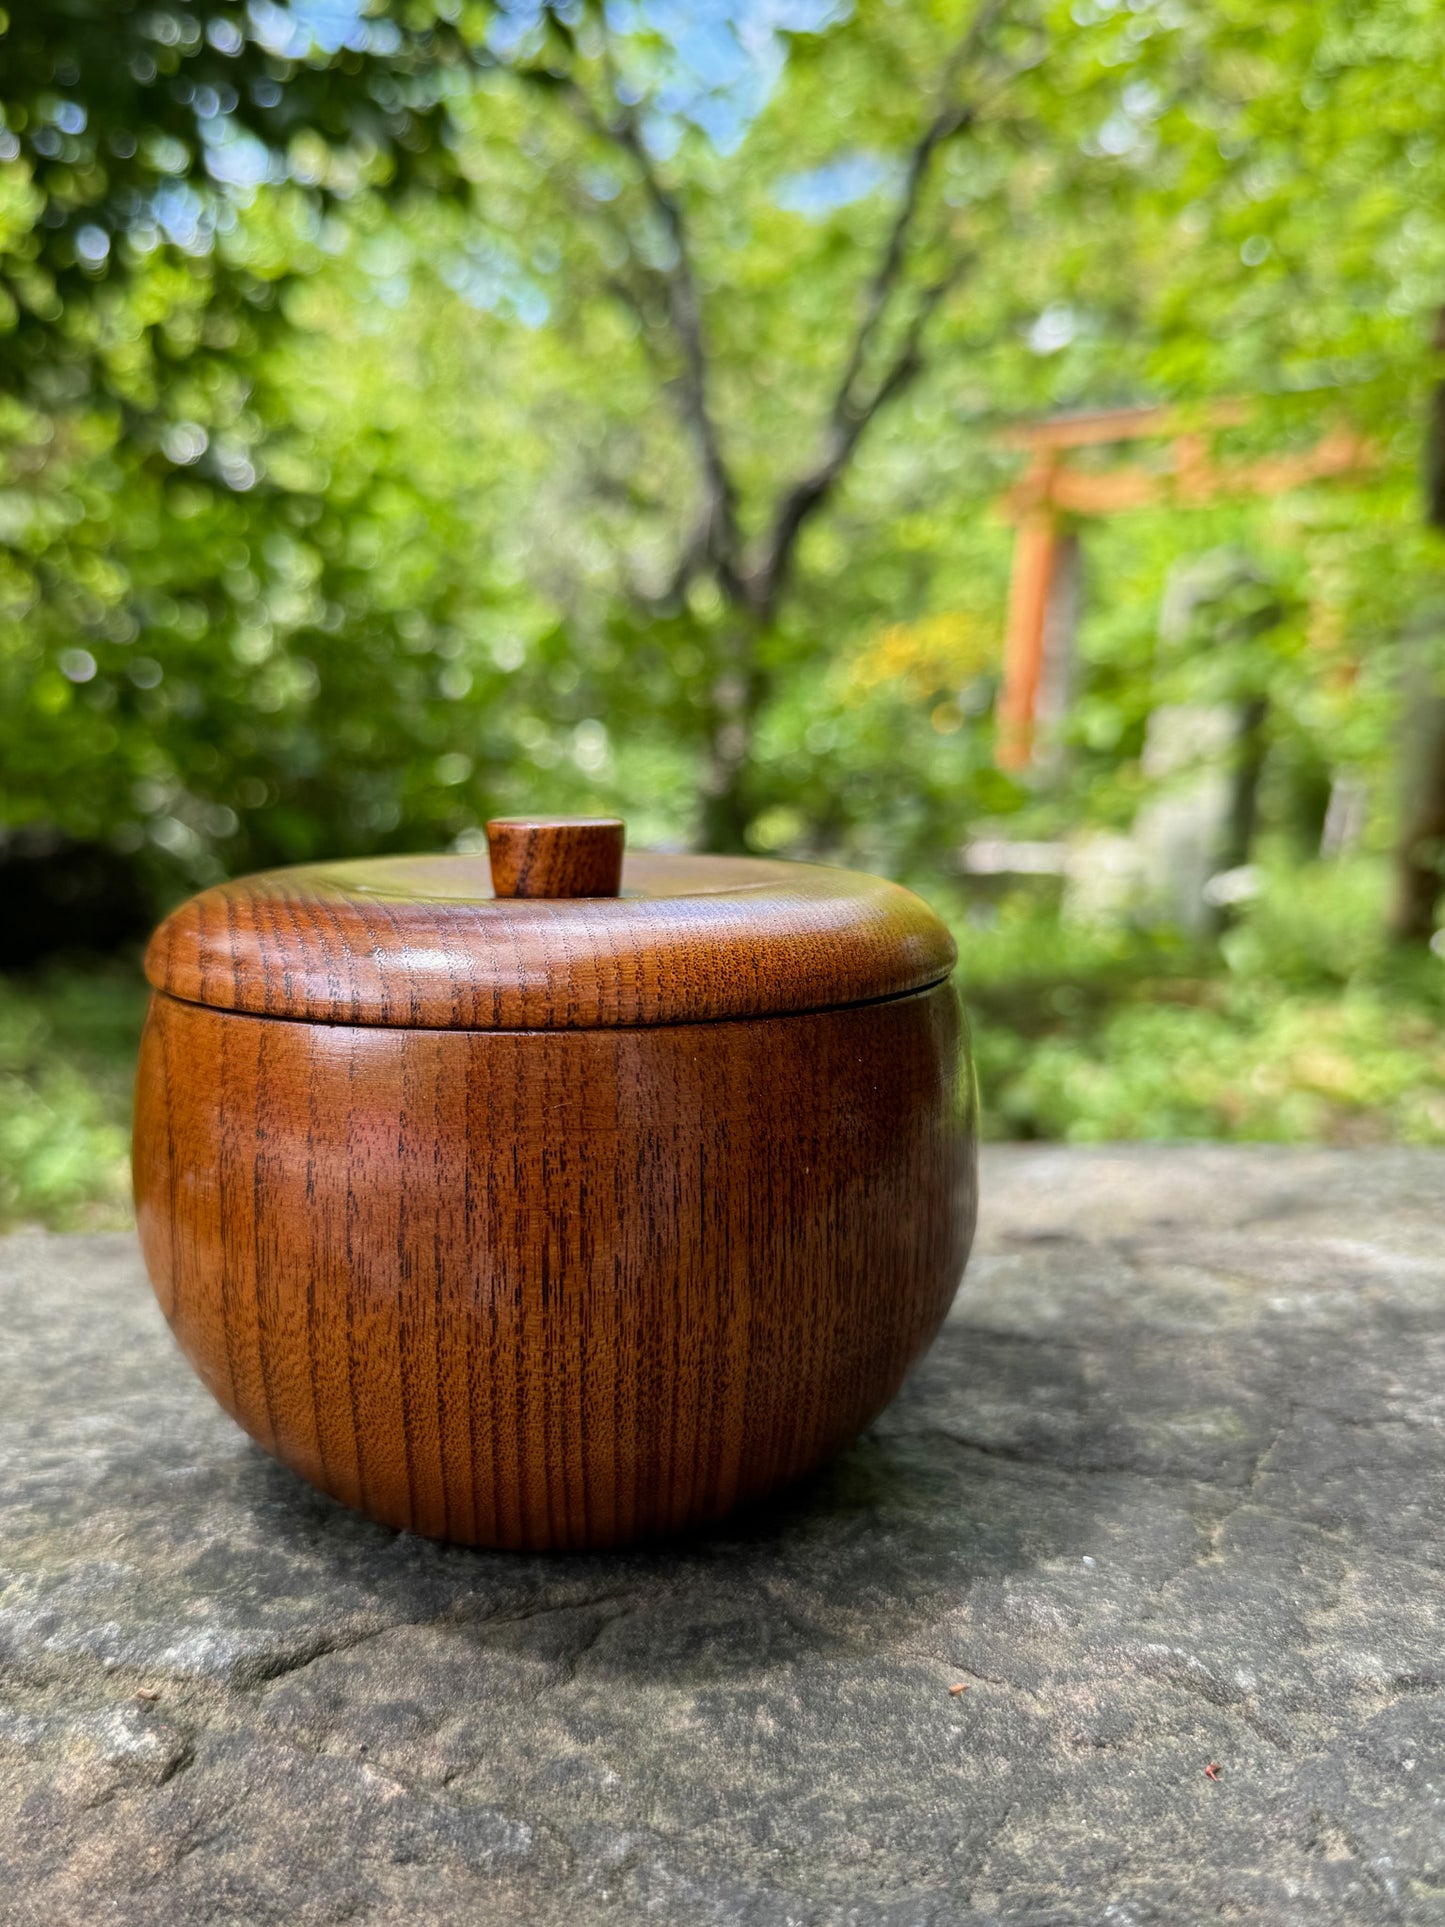 Boite japonaise bois naturel vernis